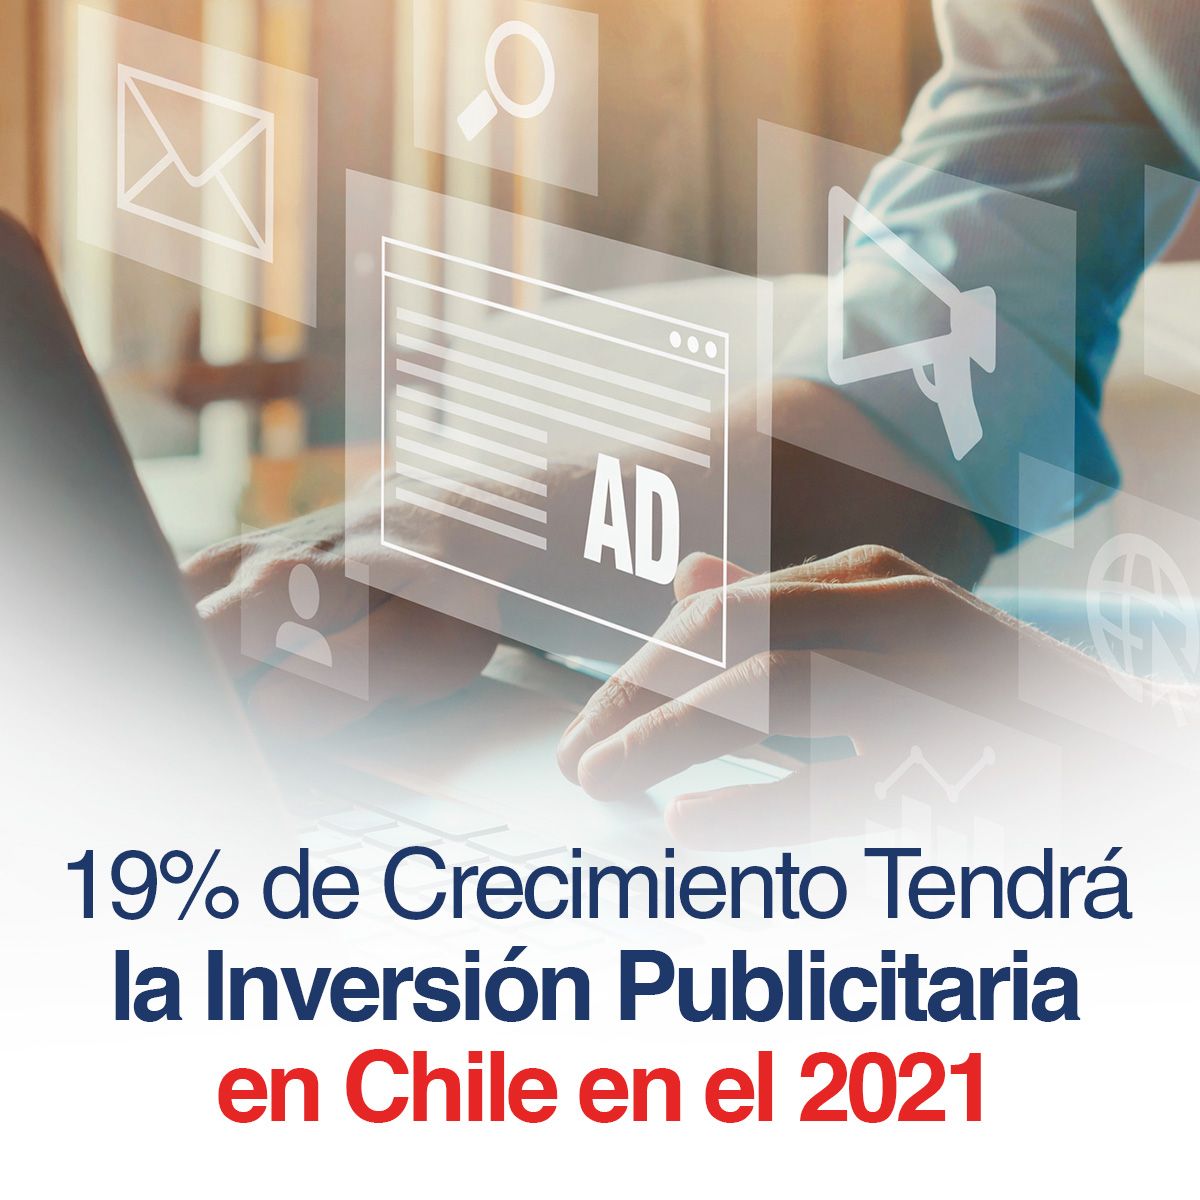 19% de Crecimiento Tendrá la Inversión Publicitaria en Chile en el 2021